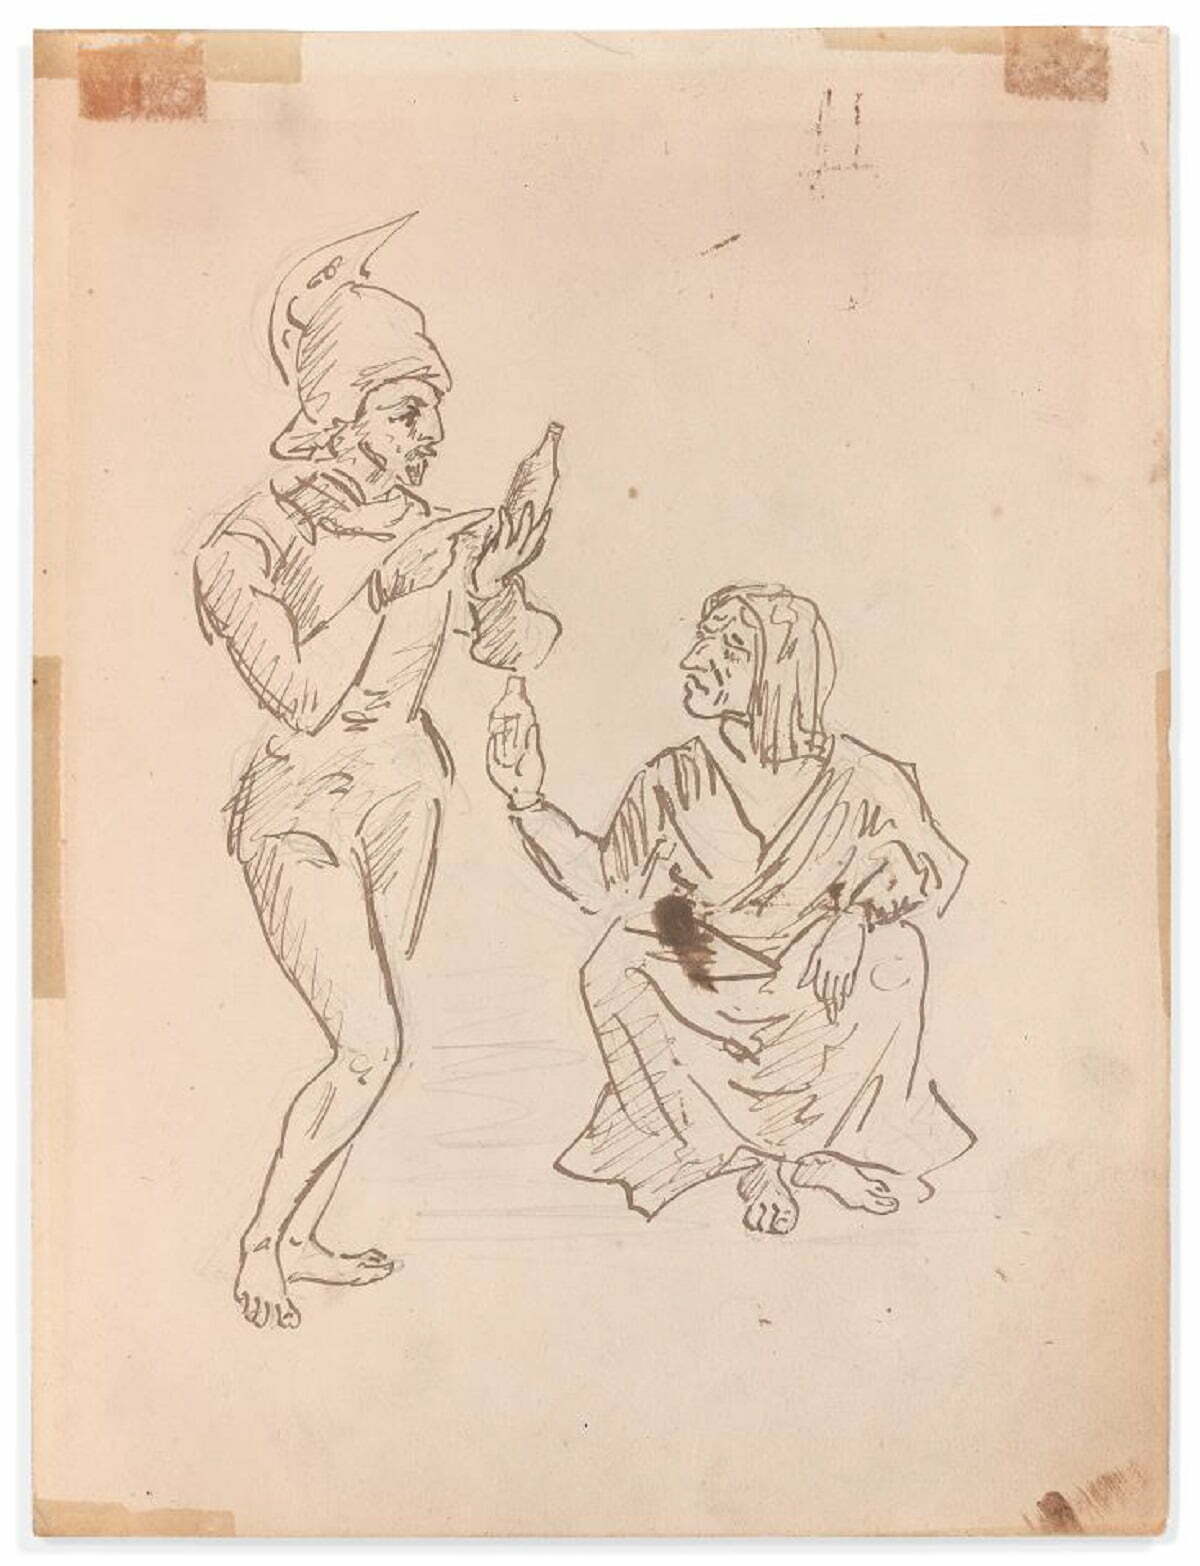 Un desen de tinerețe al lui Cézanne, recent descoperit, va fi scos la licitație în martie